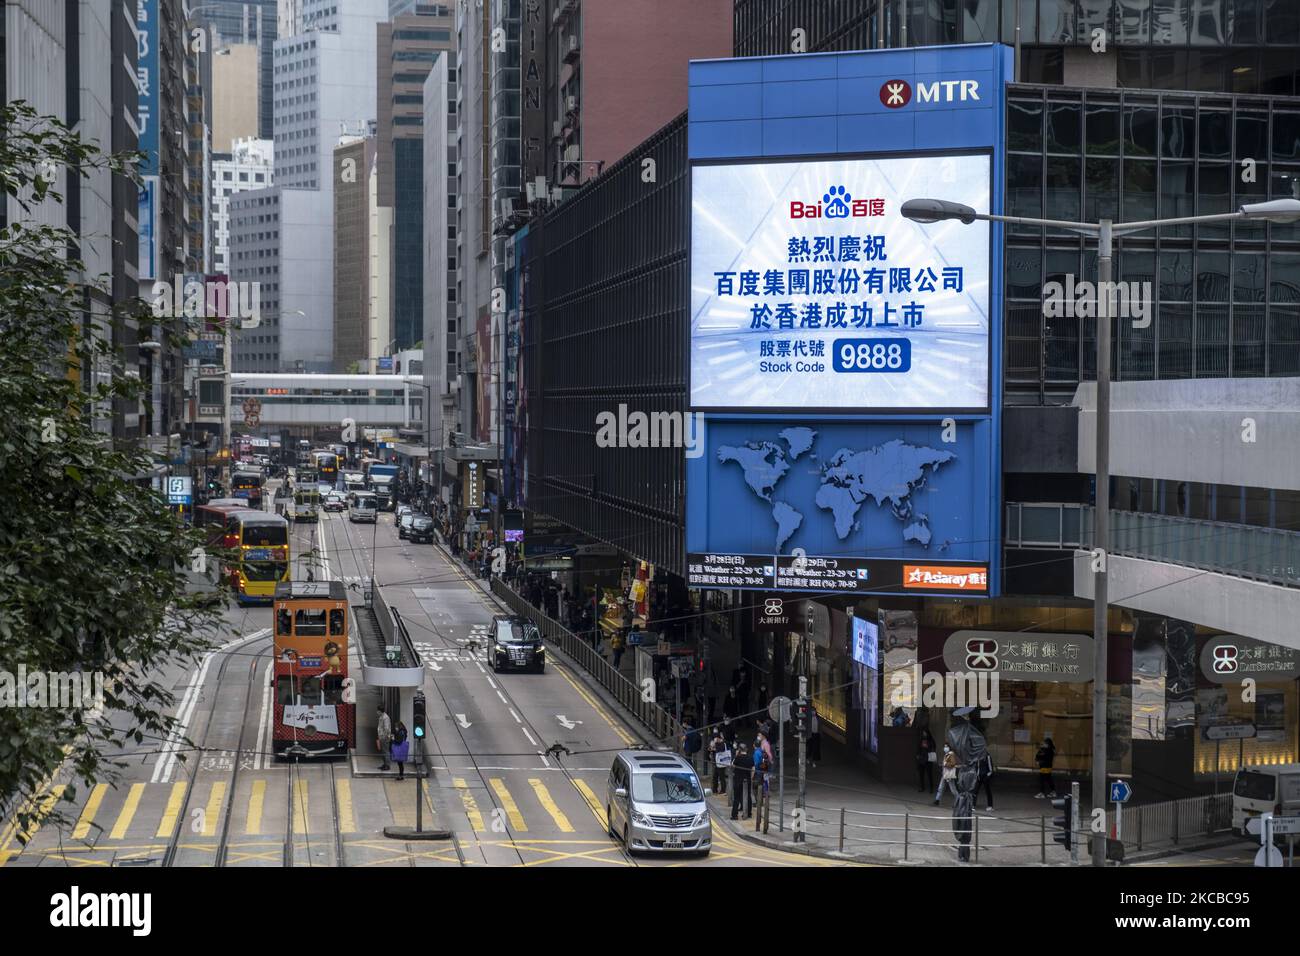 Ein Bildschirm zeigt eine Meldung an, die die Notierung von Baidu Inc. An der Börse von Hongkong in Hongkong, China, am Dienstag, den 23. März 2021, markiert. Baidus Aktienangebot in Hongkong markiert heute ein unwahrscheinliches Wiederaufleben für founderÂ Robin Li, der sich nach dem Verschwendung eines beinahe-Monopols bei der Suche wieder zur Relevanz in der chinesischen Technologiebranche zurückgeschlagen hat. (Foto von Vernon Yuen/NurPhoto) Stockfoto